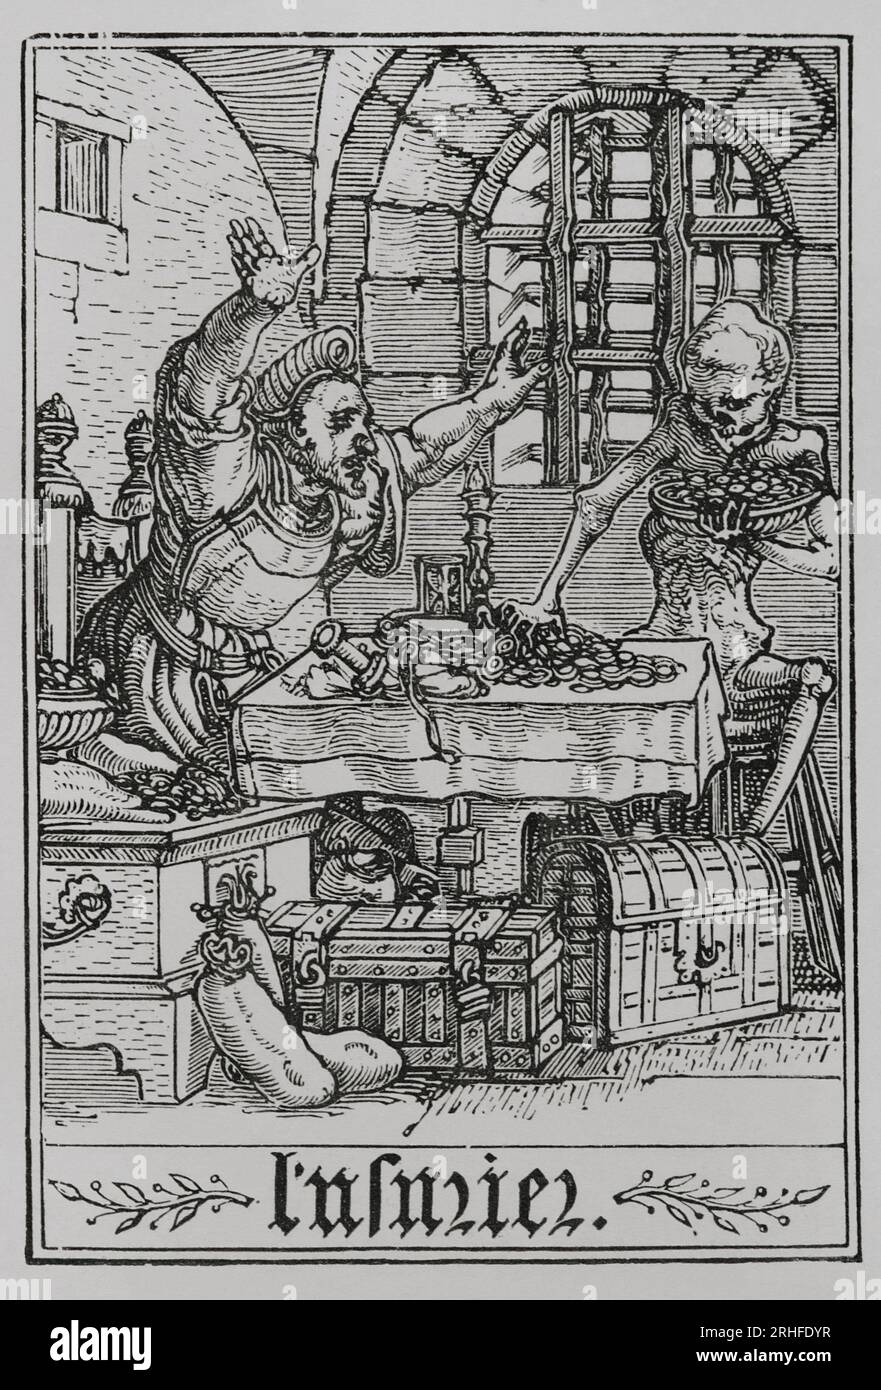 Le miser. Représentation d'un homme riche qui s'est enfermé dans une pièce aux fenêtres barrées. Pièces de monnaie, coffres et sacs d'argent tout autour de lui. Un squelette essaie de prendre des pièces de la table, étant réprimandé par l'homme qui ne semble pas en avoir peur. Fac-similé d'une gravure appartenant à la série 'la danse de la mort' de Hans Holbein le Jeune, dans 'les Simulachres et histoires faciées de la mort', 1538. « Vie militaire et religieuse au Moyen Age et à l'époque de la Renaissance ». Paris, 1877. Banque D'Images